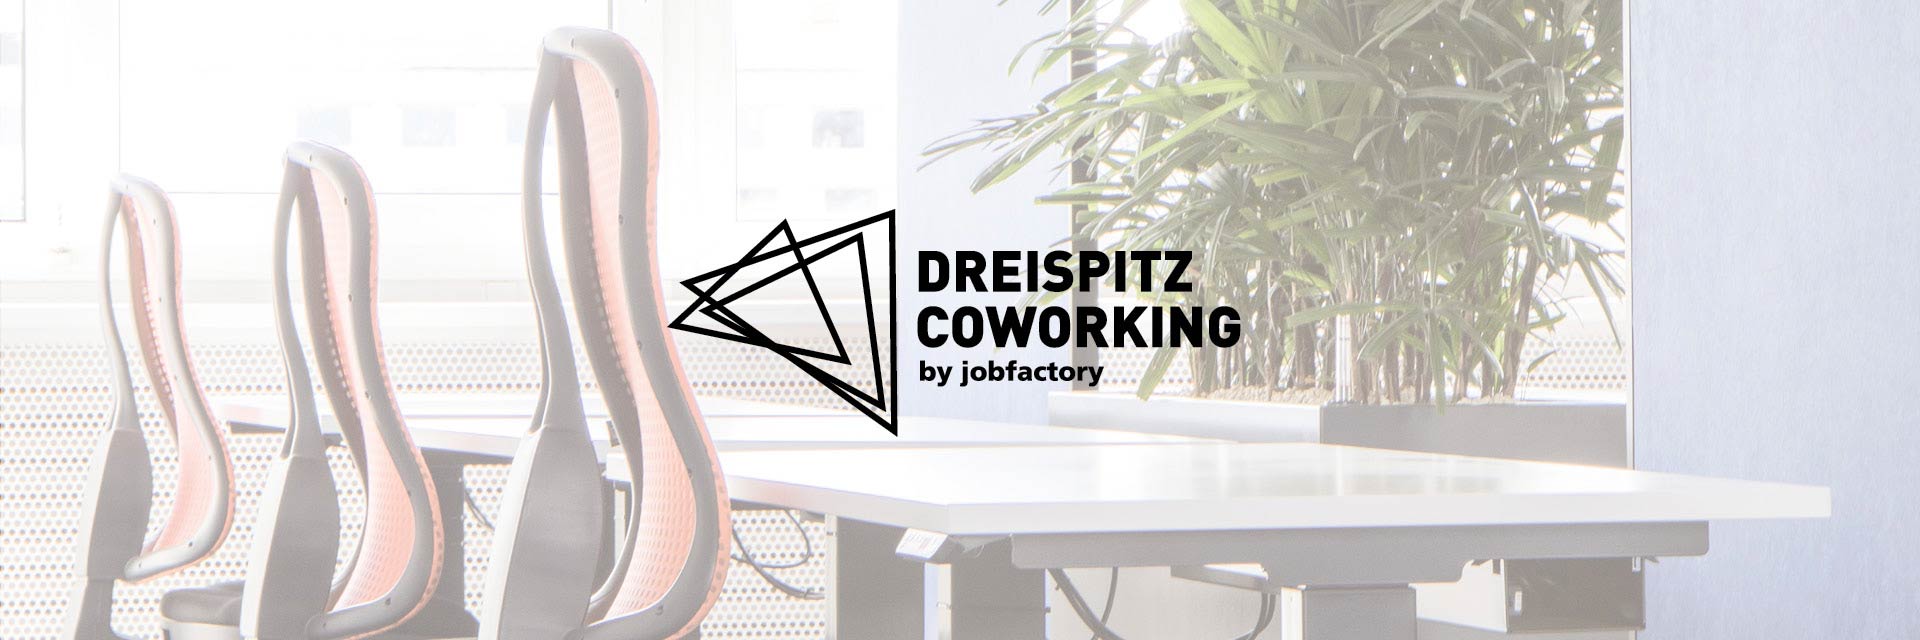 Jobfactory Geschäftsfeld Dreispitz Coworking